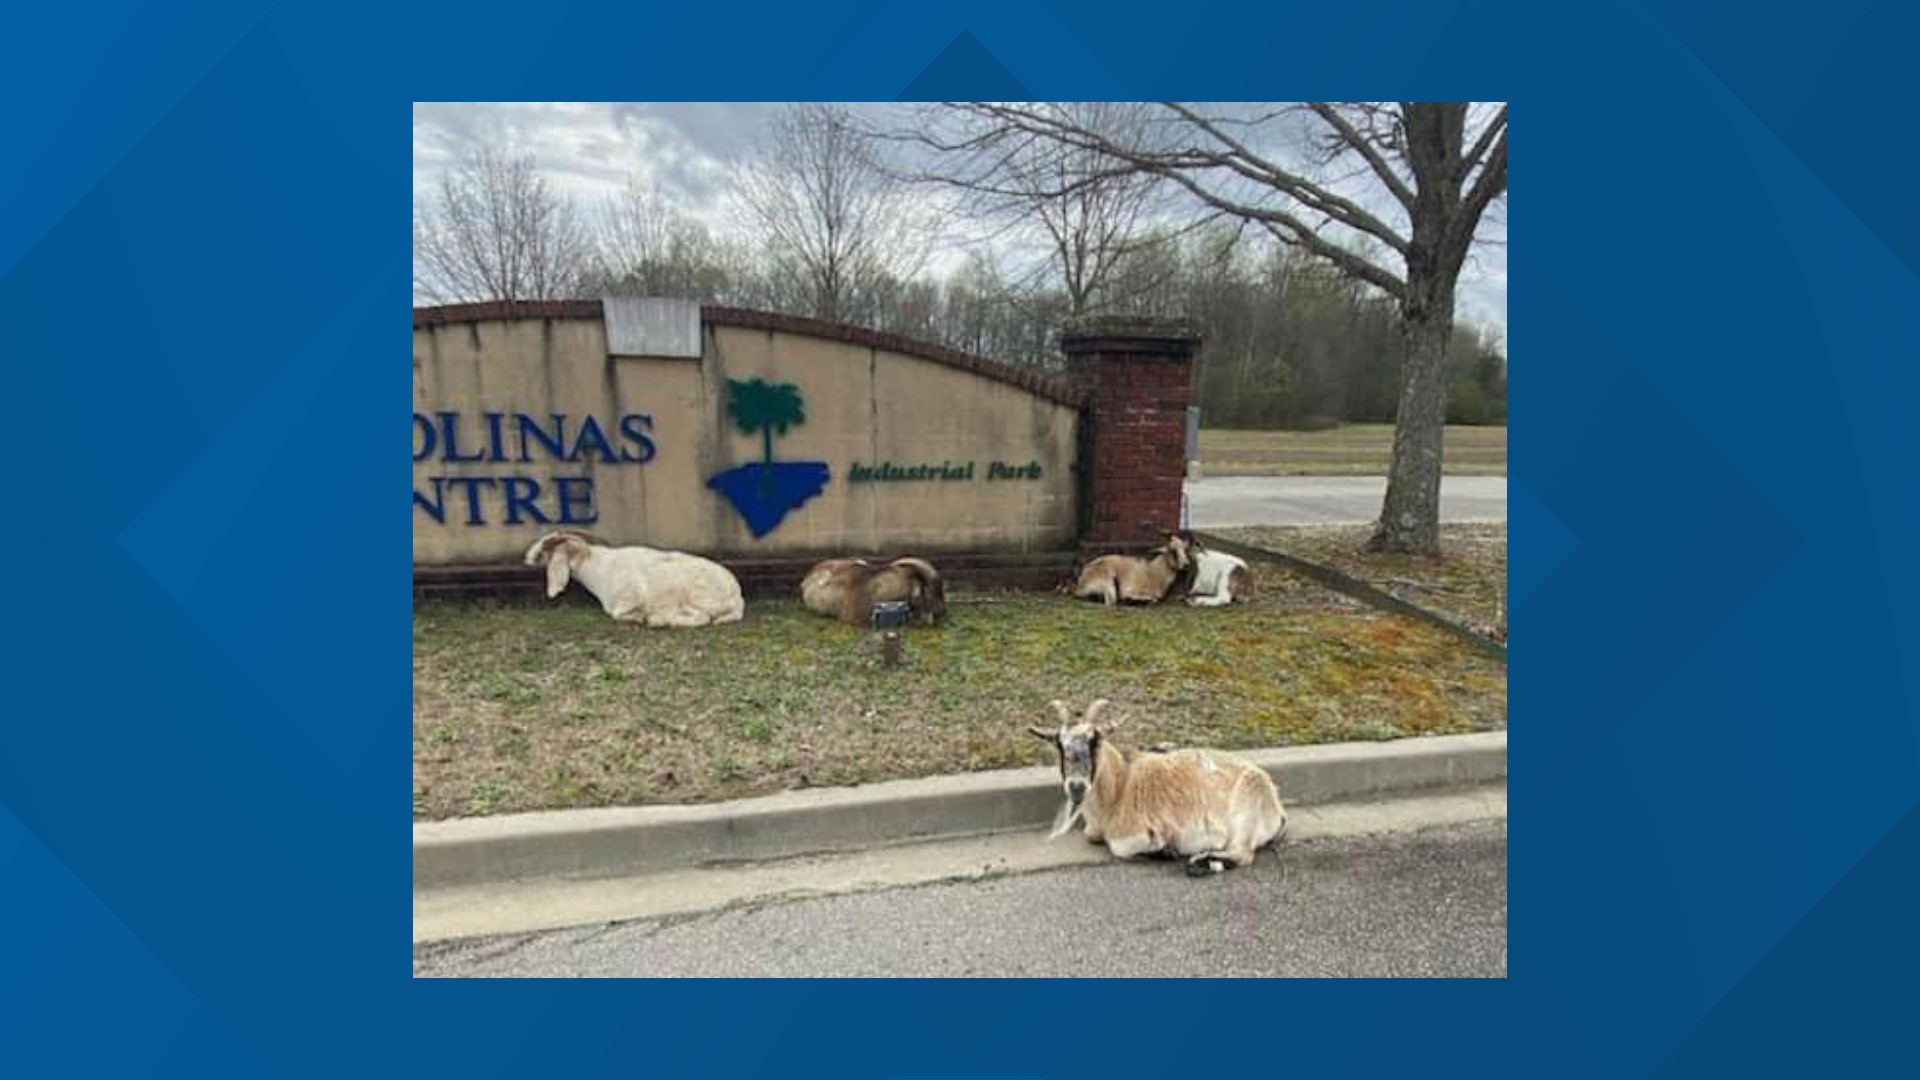 Can you help get these goats baaaaaaaack to the farm?